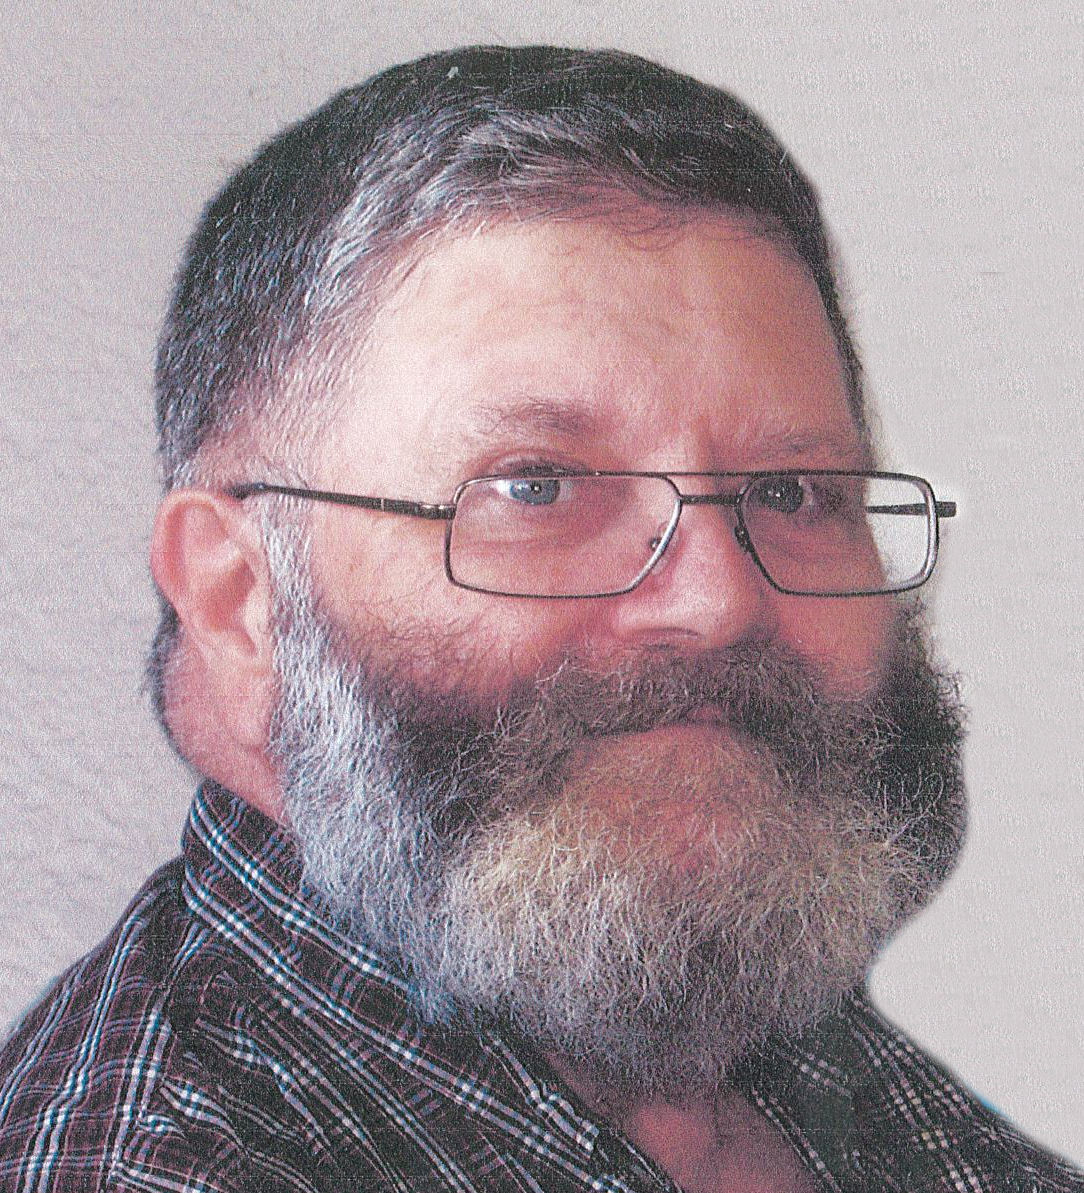 TOMPOROWSKI, Dale Vern  1945 – 2012